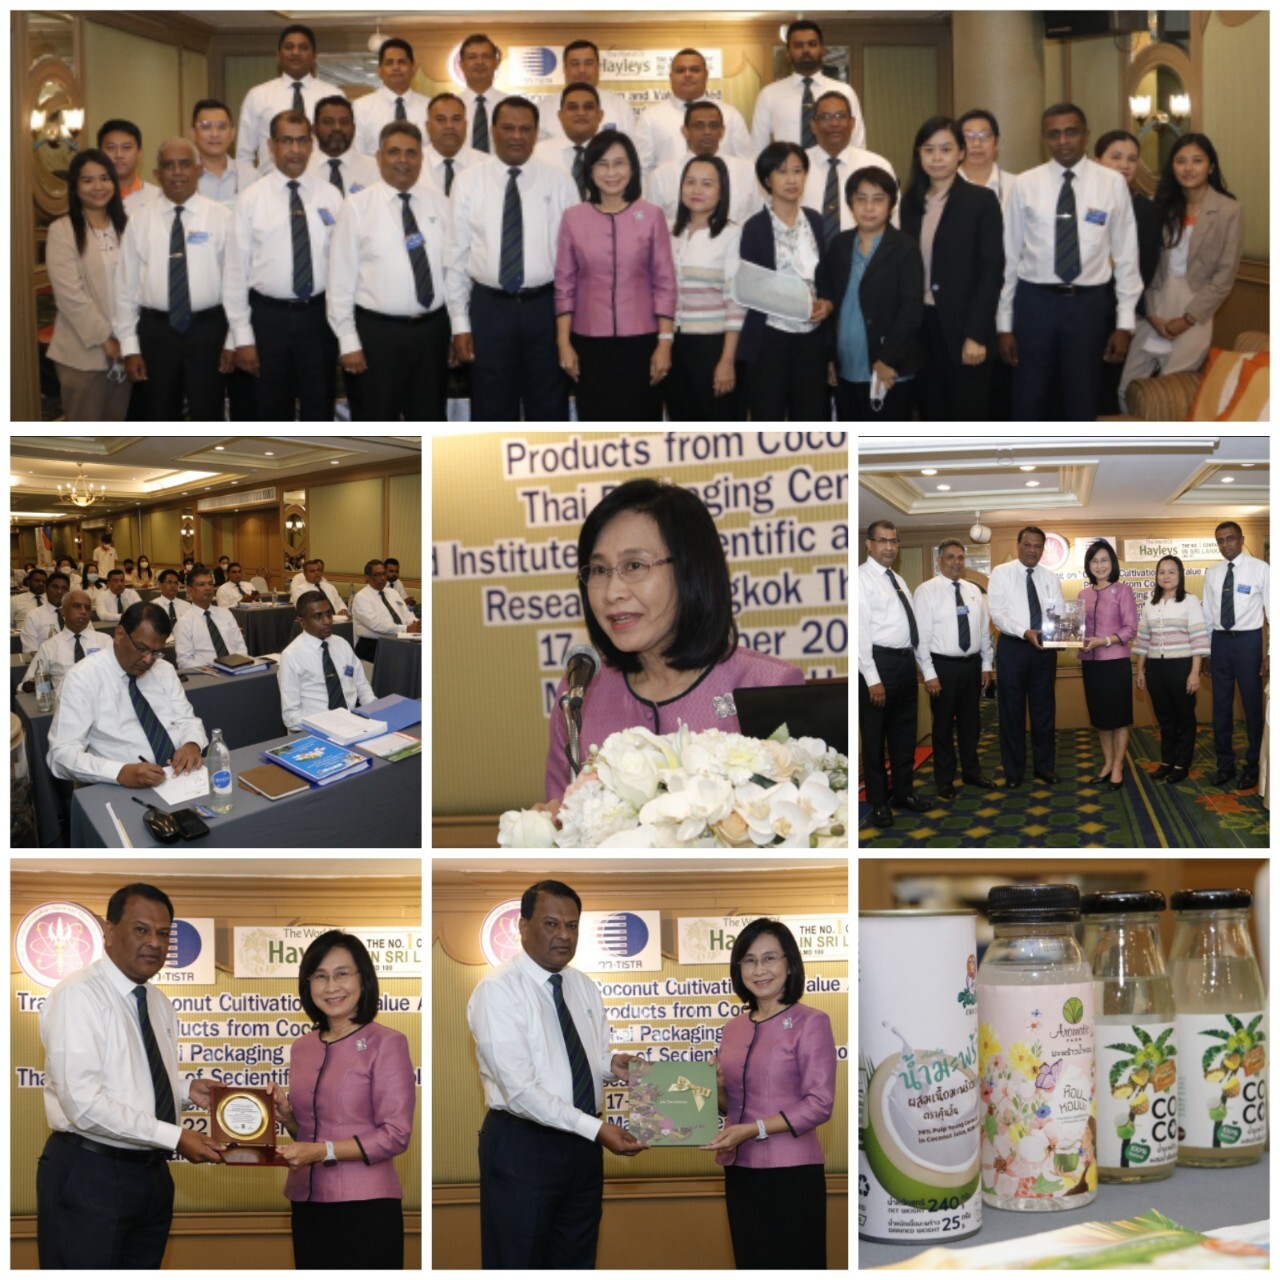 วว.จัดการฝึกอบรม "Coconut Cultivation and Value Added Products  from Coconut" แลกเปลี่ยนความรู้ แนวทางการดำเนินงาน ระหว่างนักวิจัย ผู้ประกอบการ นักธุรกิจชาวไทย/ศรีลังกา